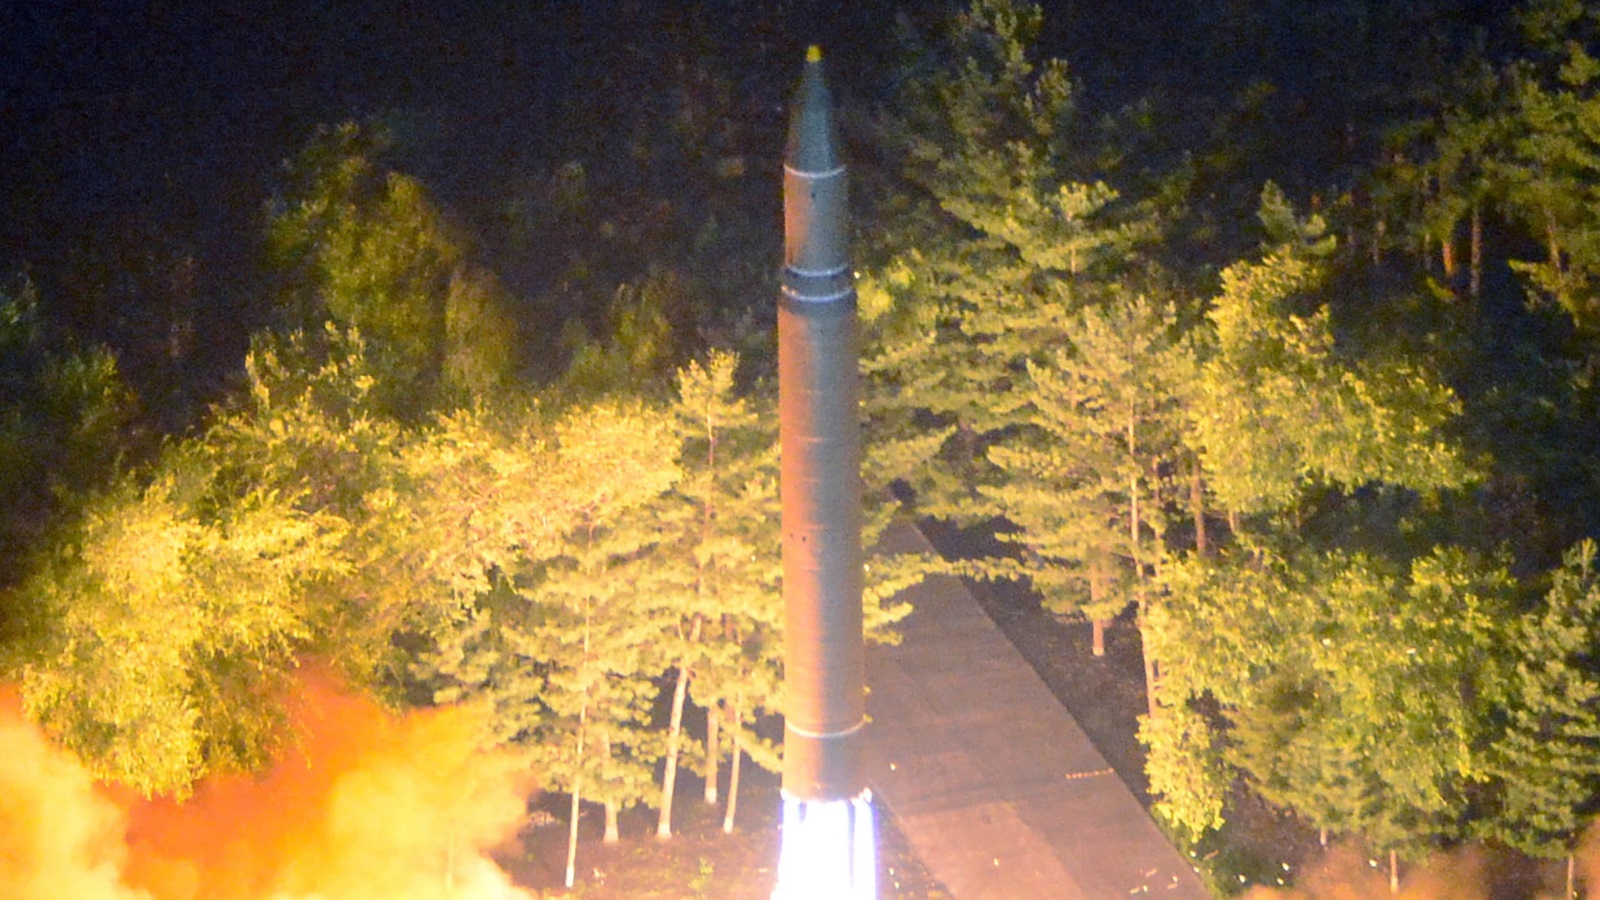 ‪إطلاق كوريا الشمالية صواريخ بالستية يواجه بغضب من الولايات المتحدة وحلفائها‬ (رويترز)